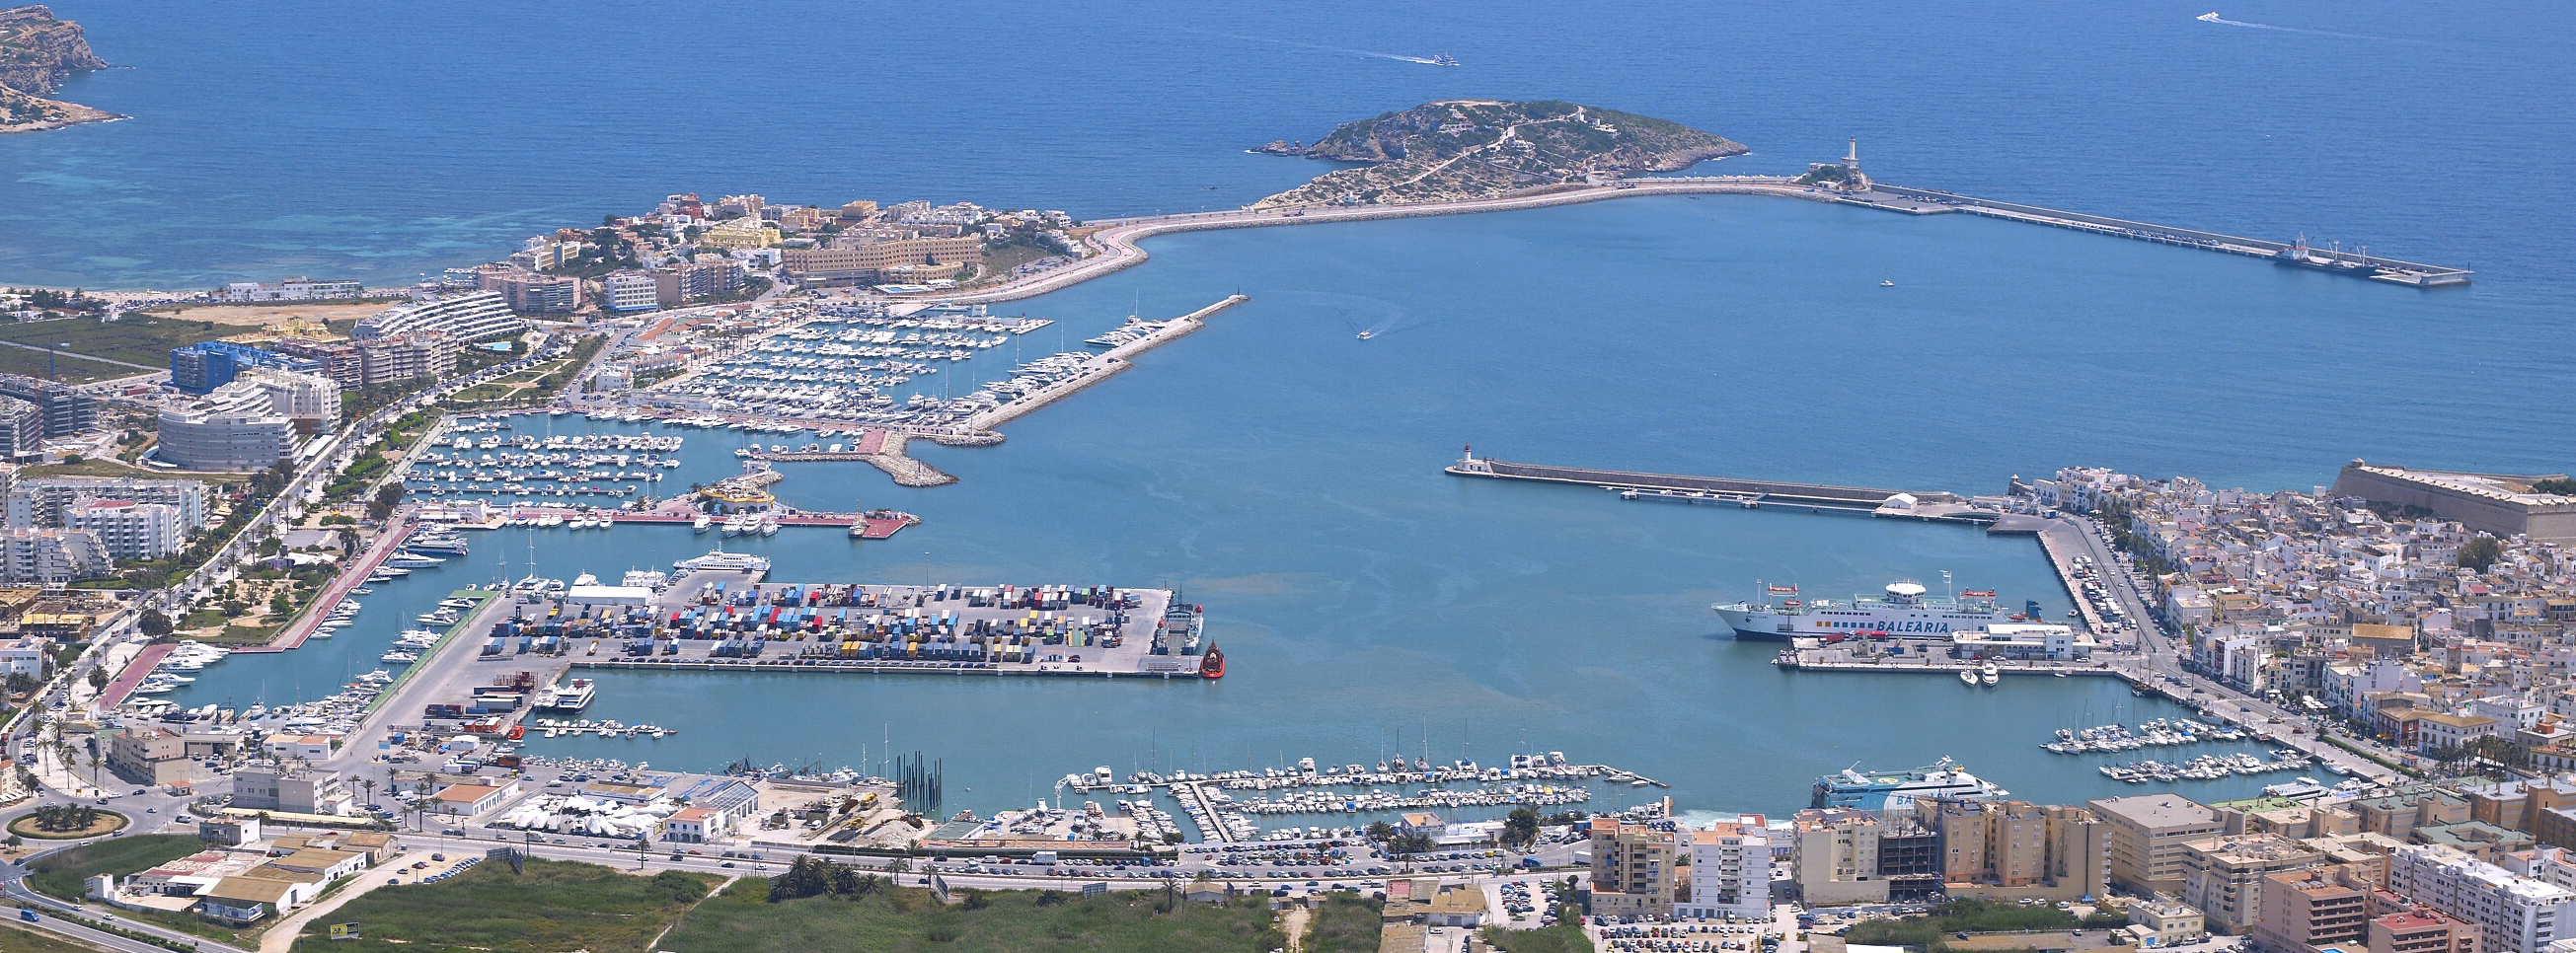 El Consell d'Administració de l'APB acorda treure a concurs la gestió de les instal·lacions que administra el Club Náutico de Ibiza